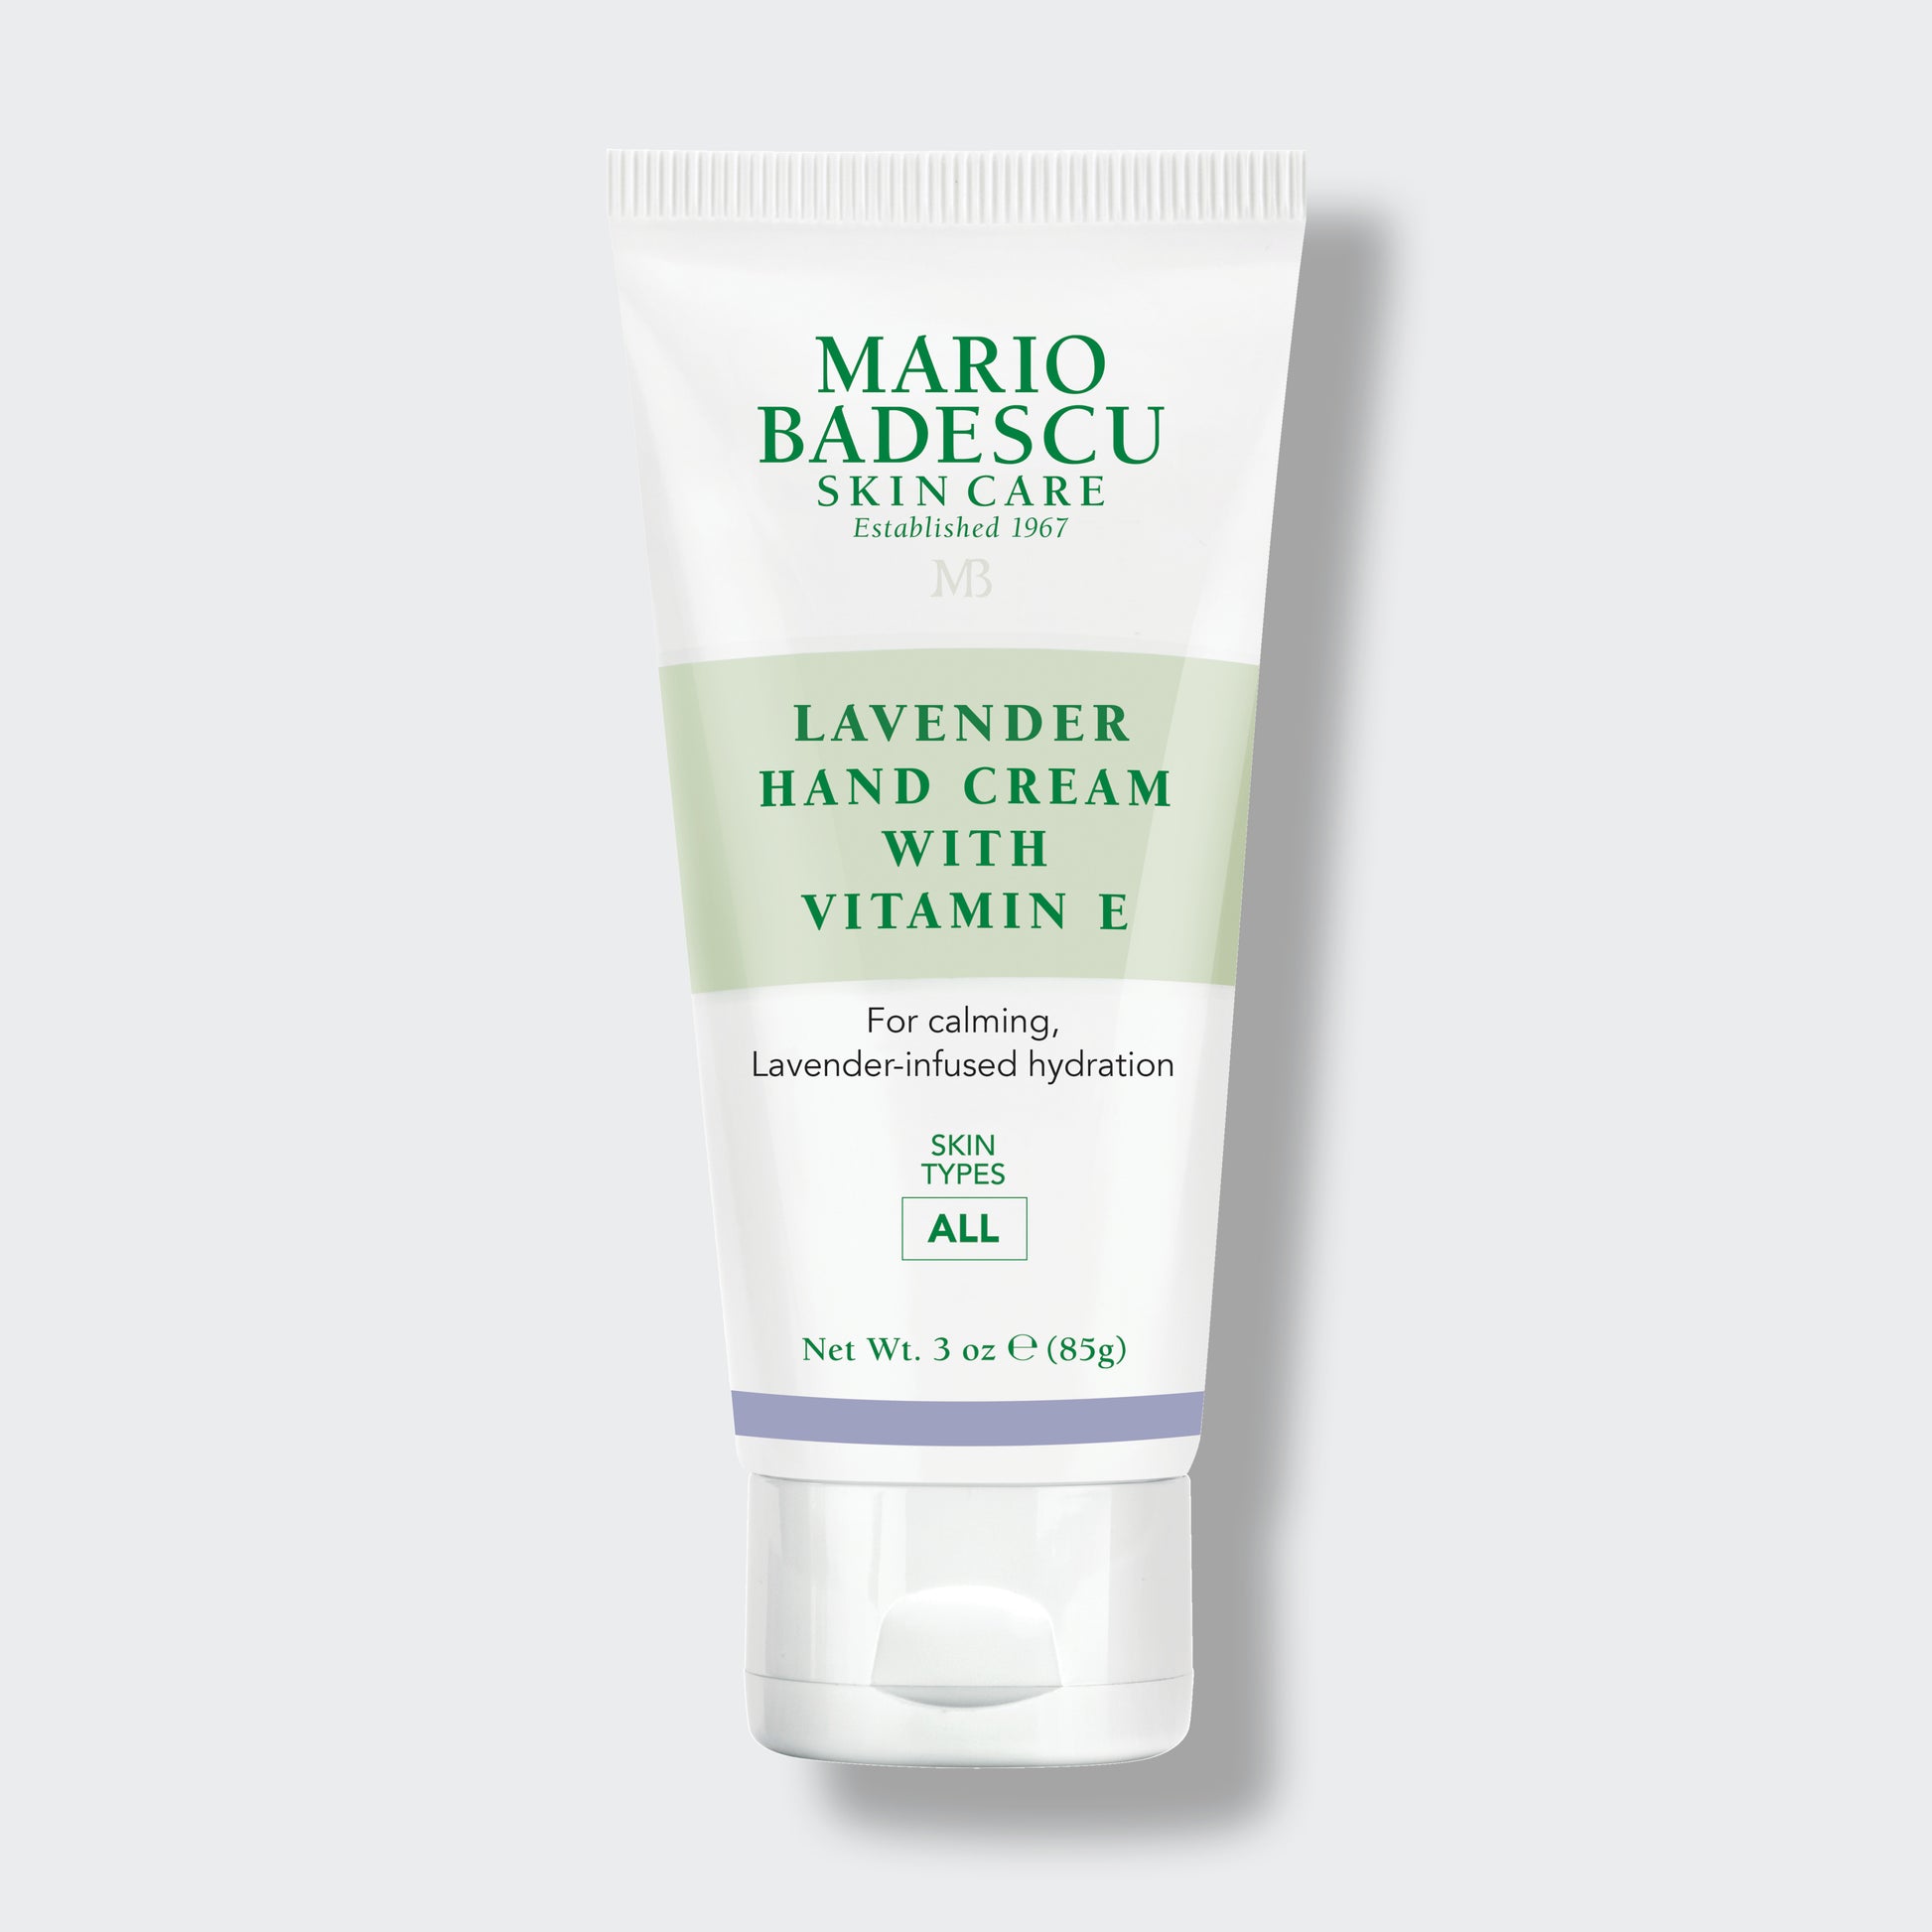 Mario Badescu Lavender Hand Cream with Vitamin E